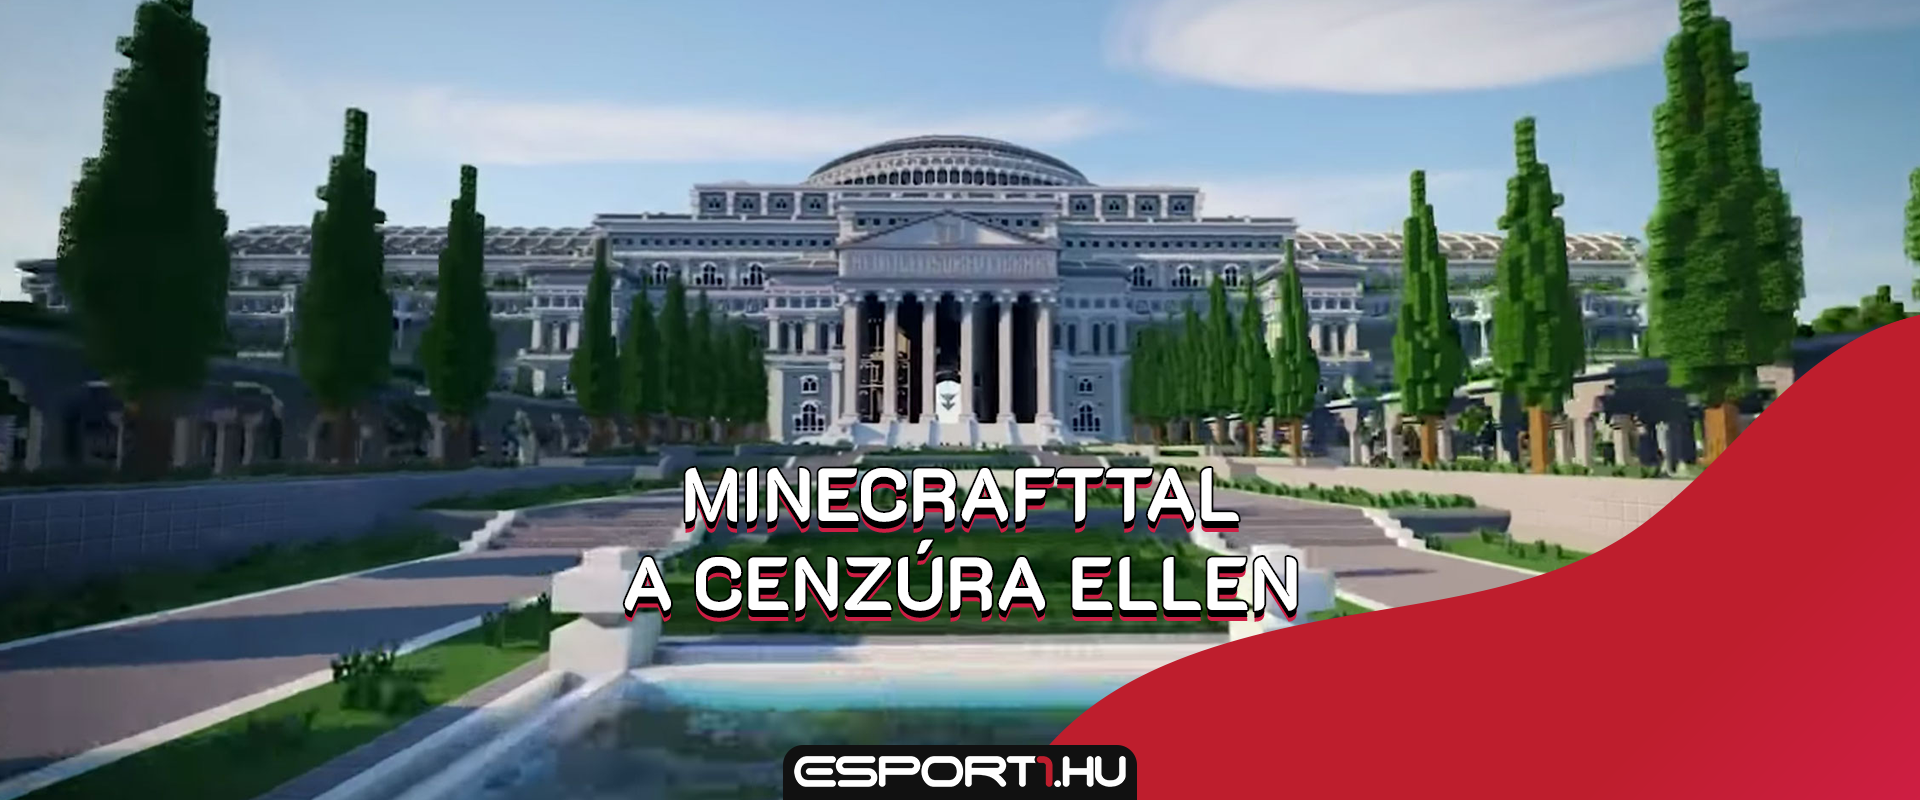 Könyvtárt nyitottak Minecraftban, ahol elérhetőek a cenzúrázott sajtótermékek